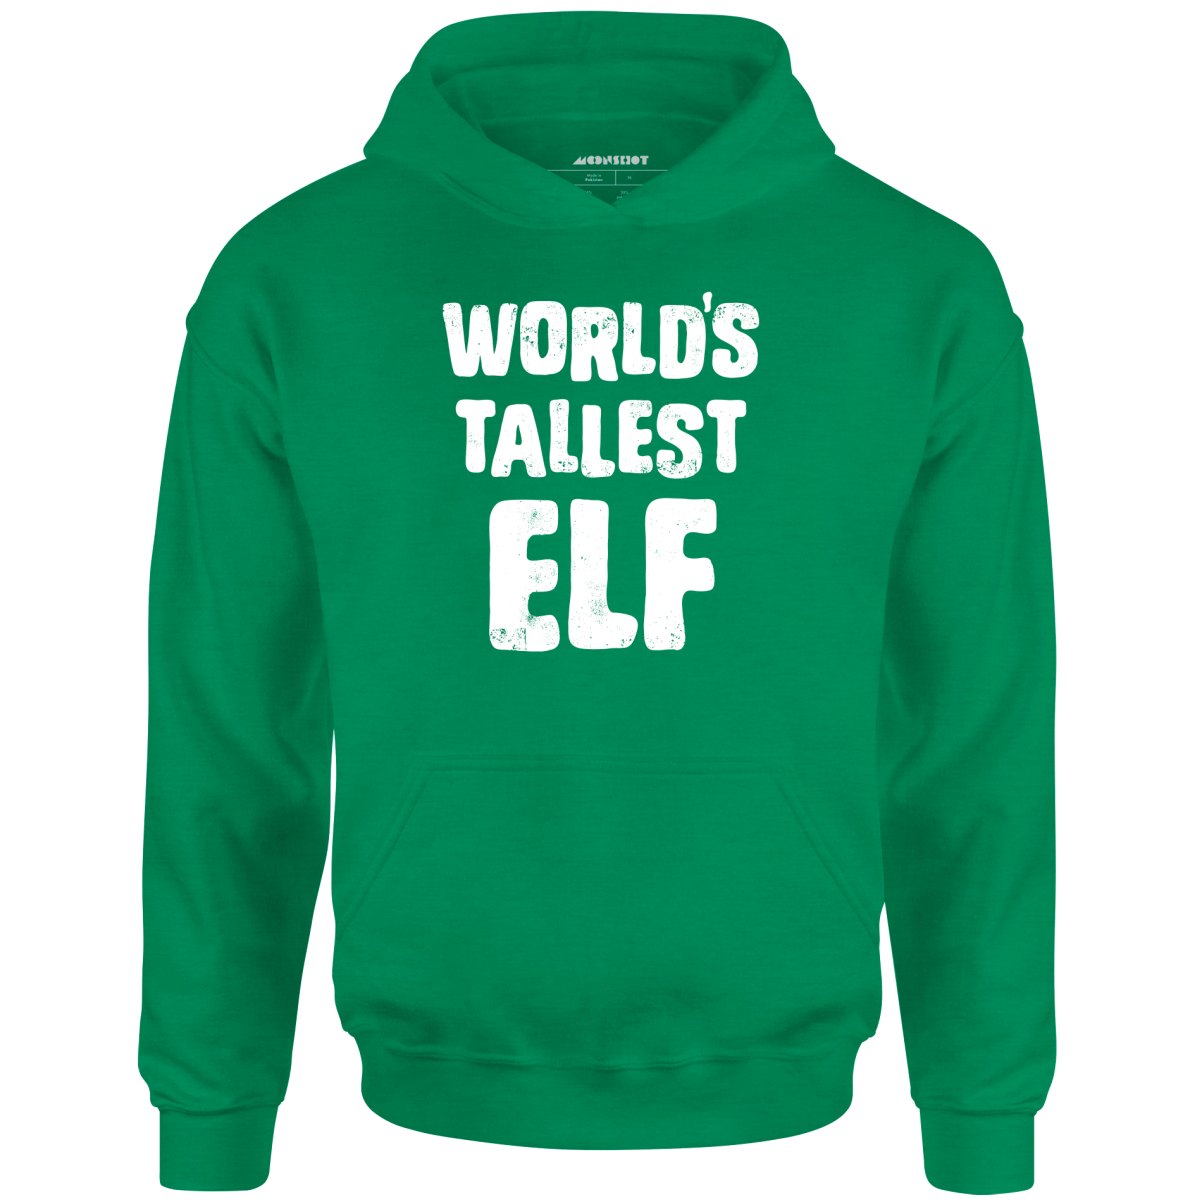 World's Tallest Elf - Unisex Hoodie